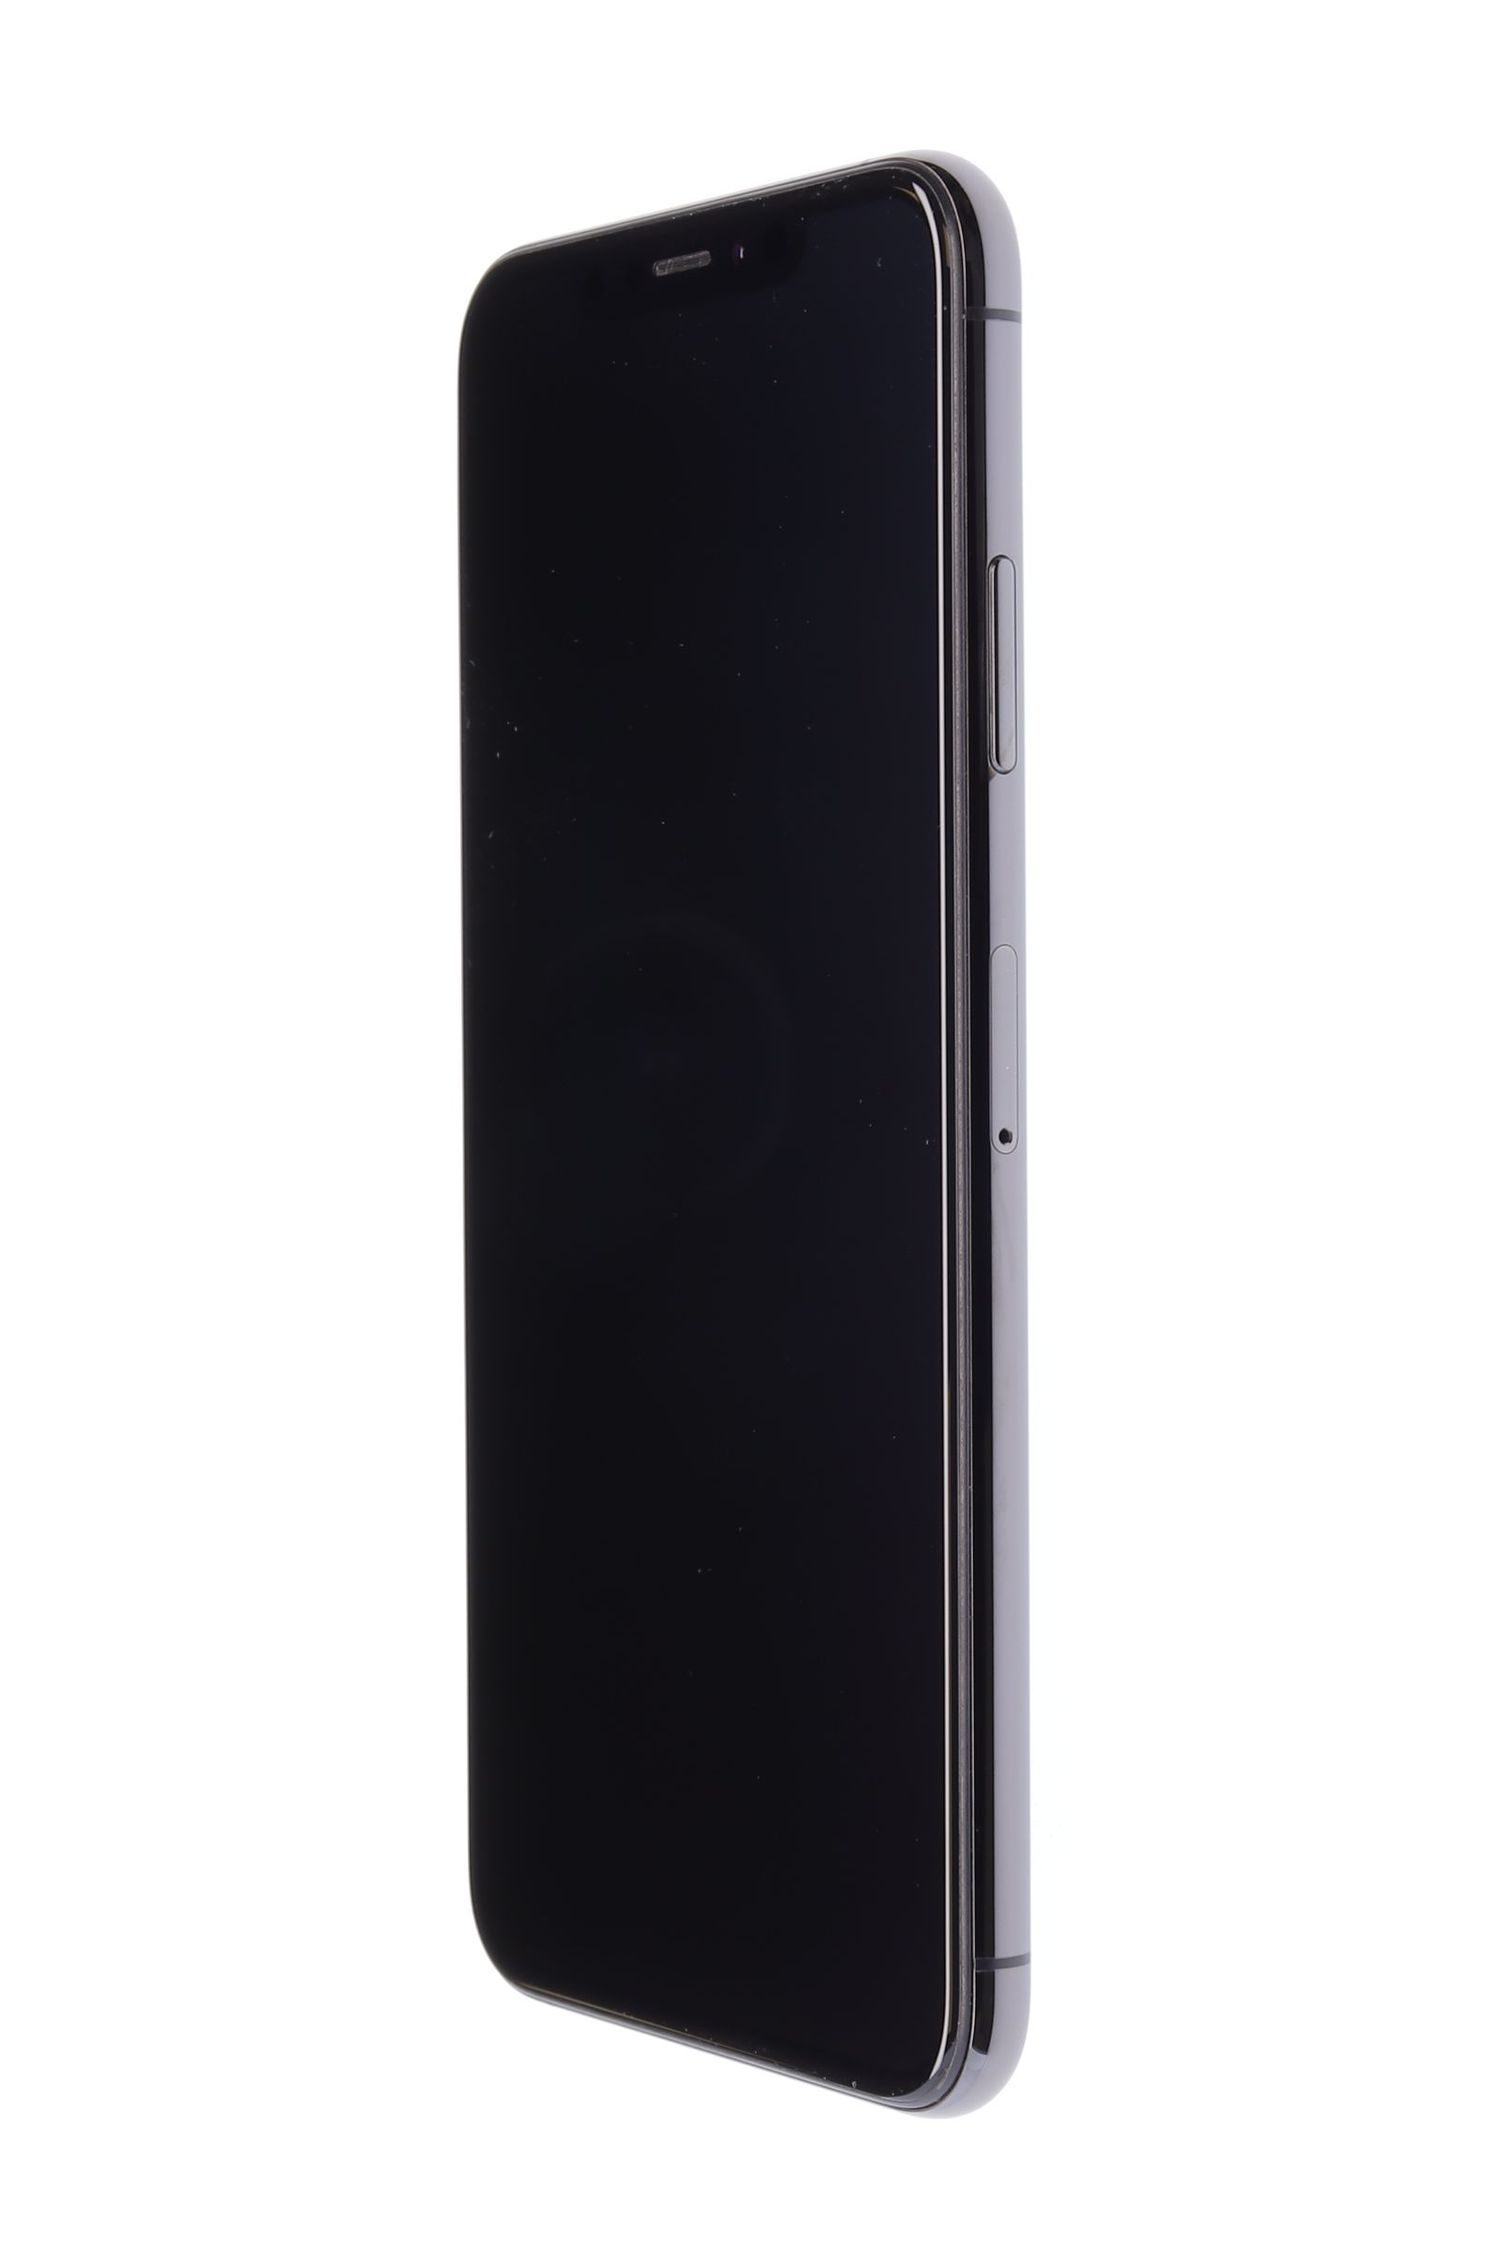 Κινητό τηλέφωνο Apple iPhone XS Max, Space Grey, 64 GB, Excelent